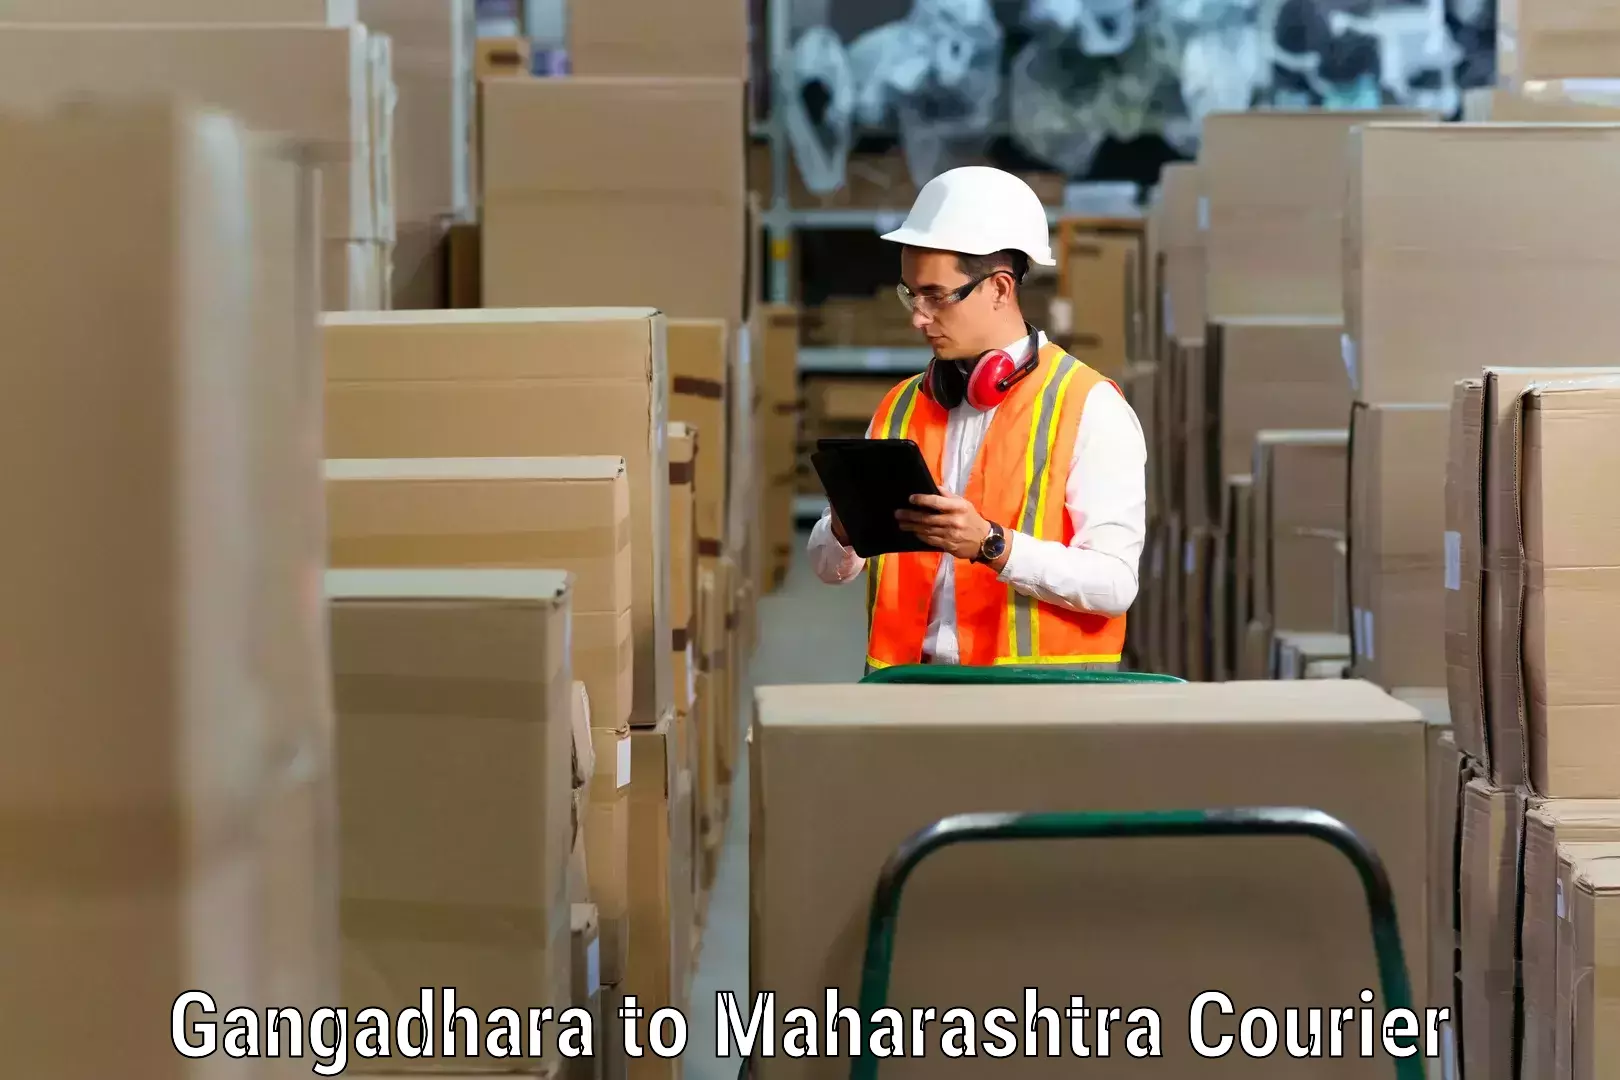 Furniture transport service Gangadhara to Pandharkawada